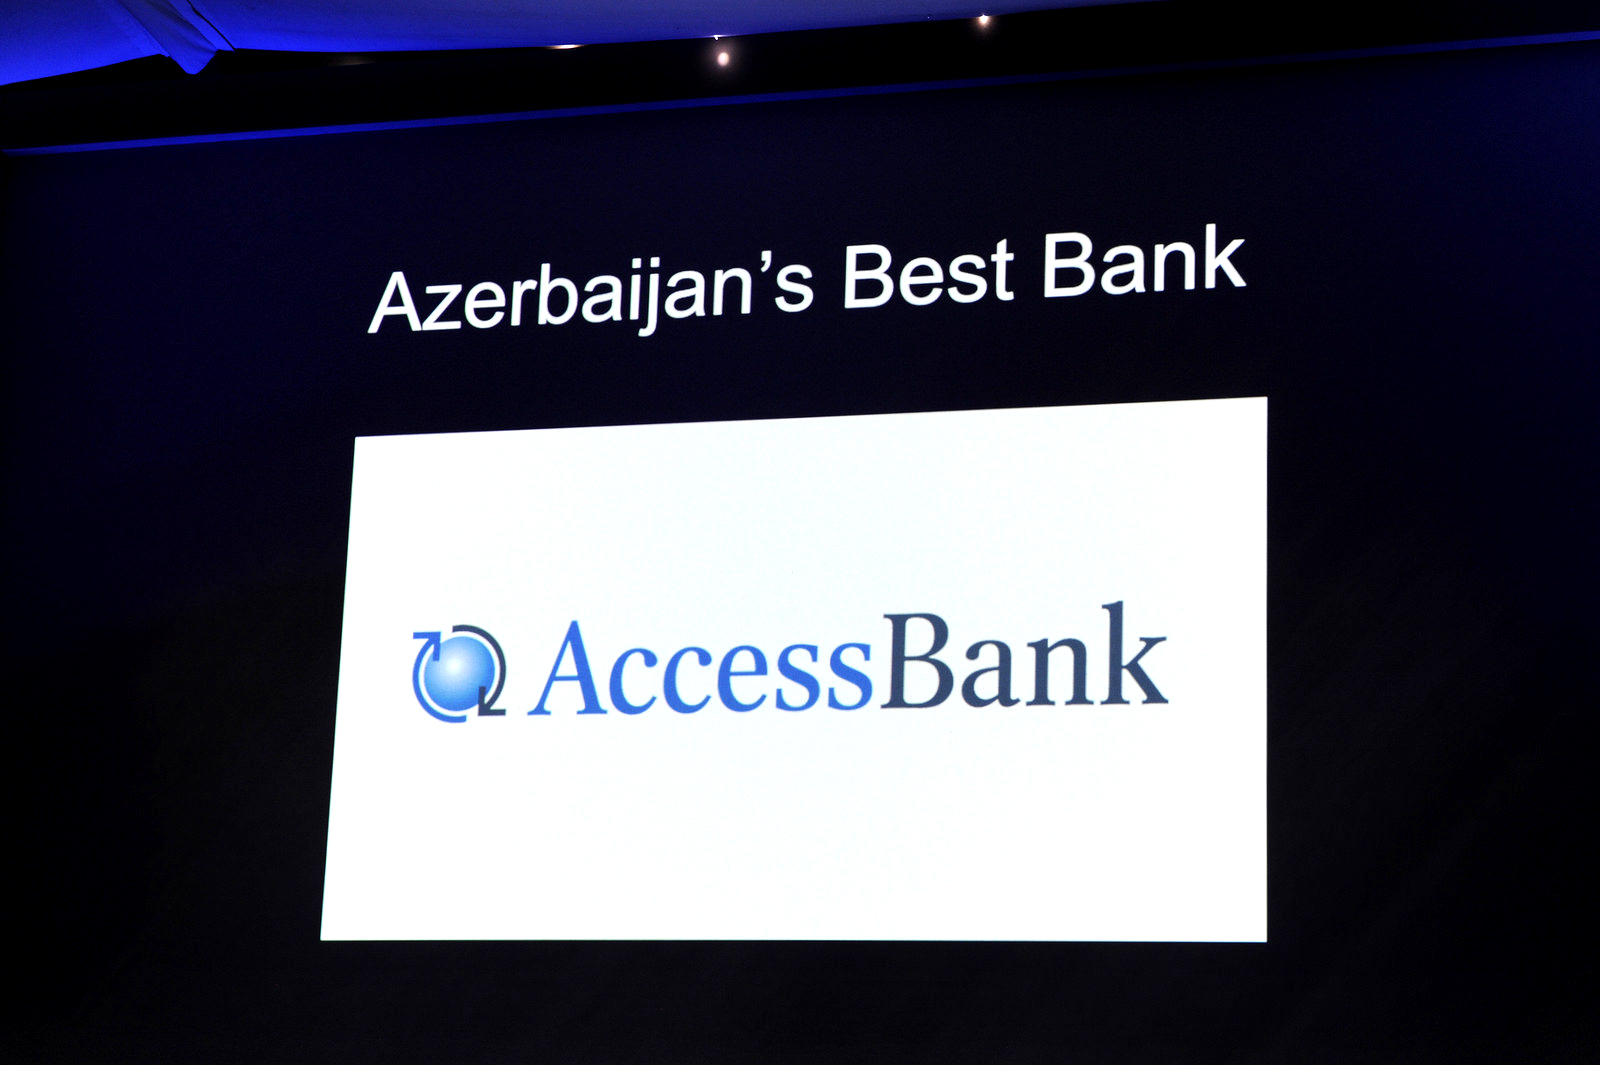 AccessBank 6-cı dəfə “Azərbaycanın ən yaxşı Bankı” adına layiq görüldü - FOTOLAR